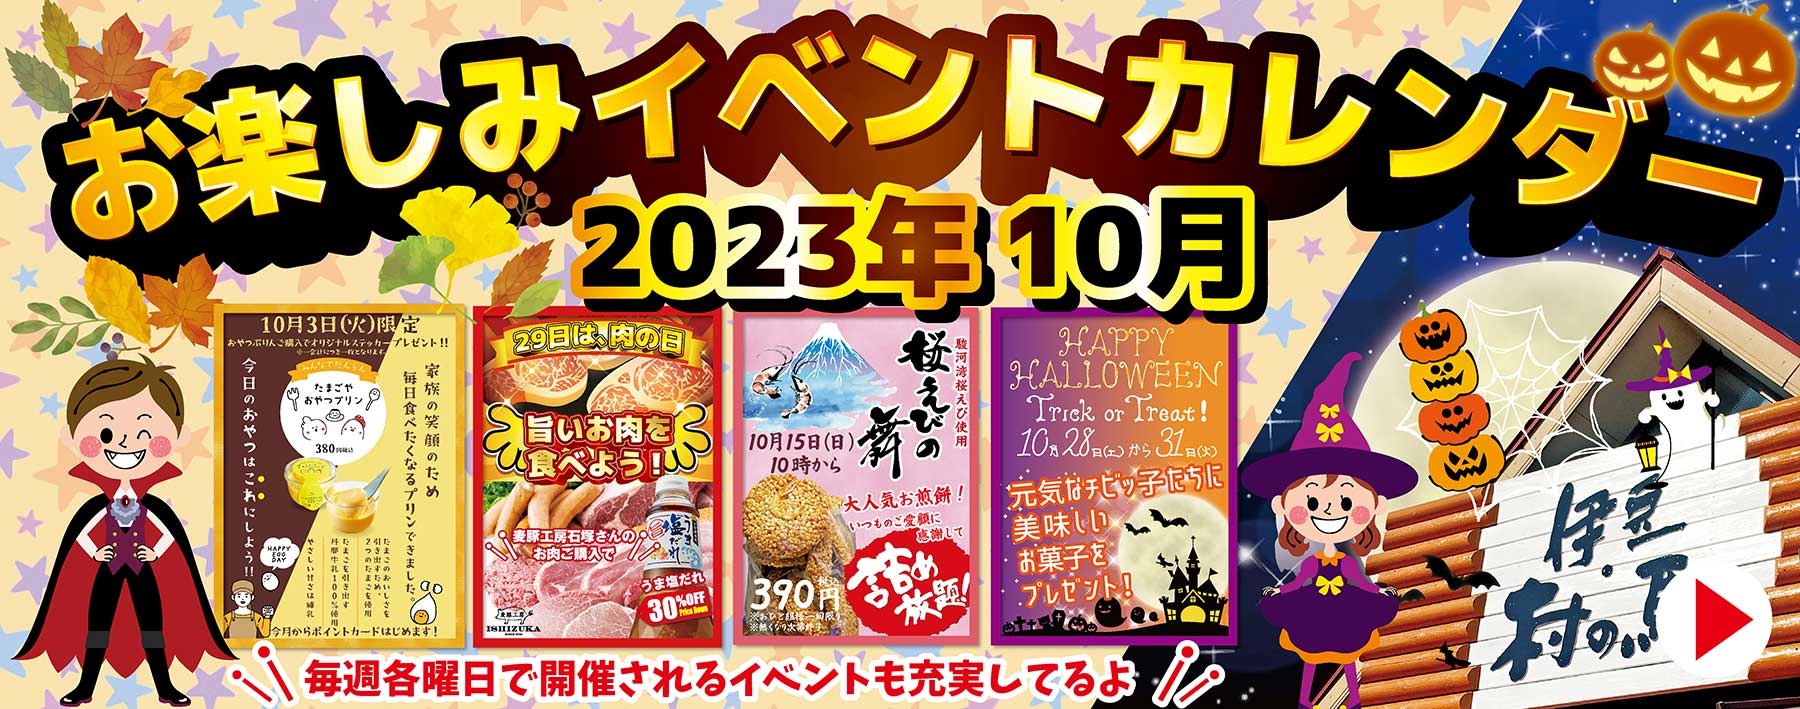 伊豆村の駅 イベントカレンダー